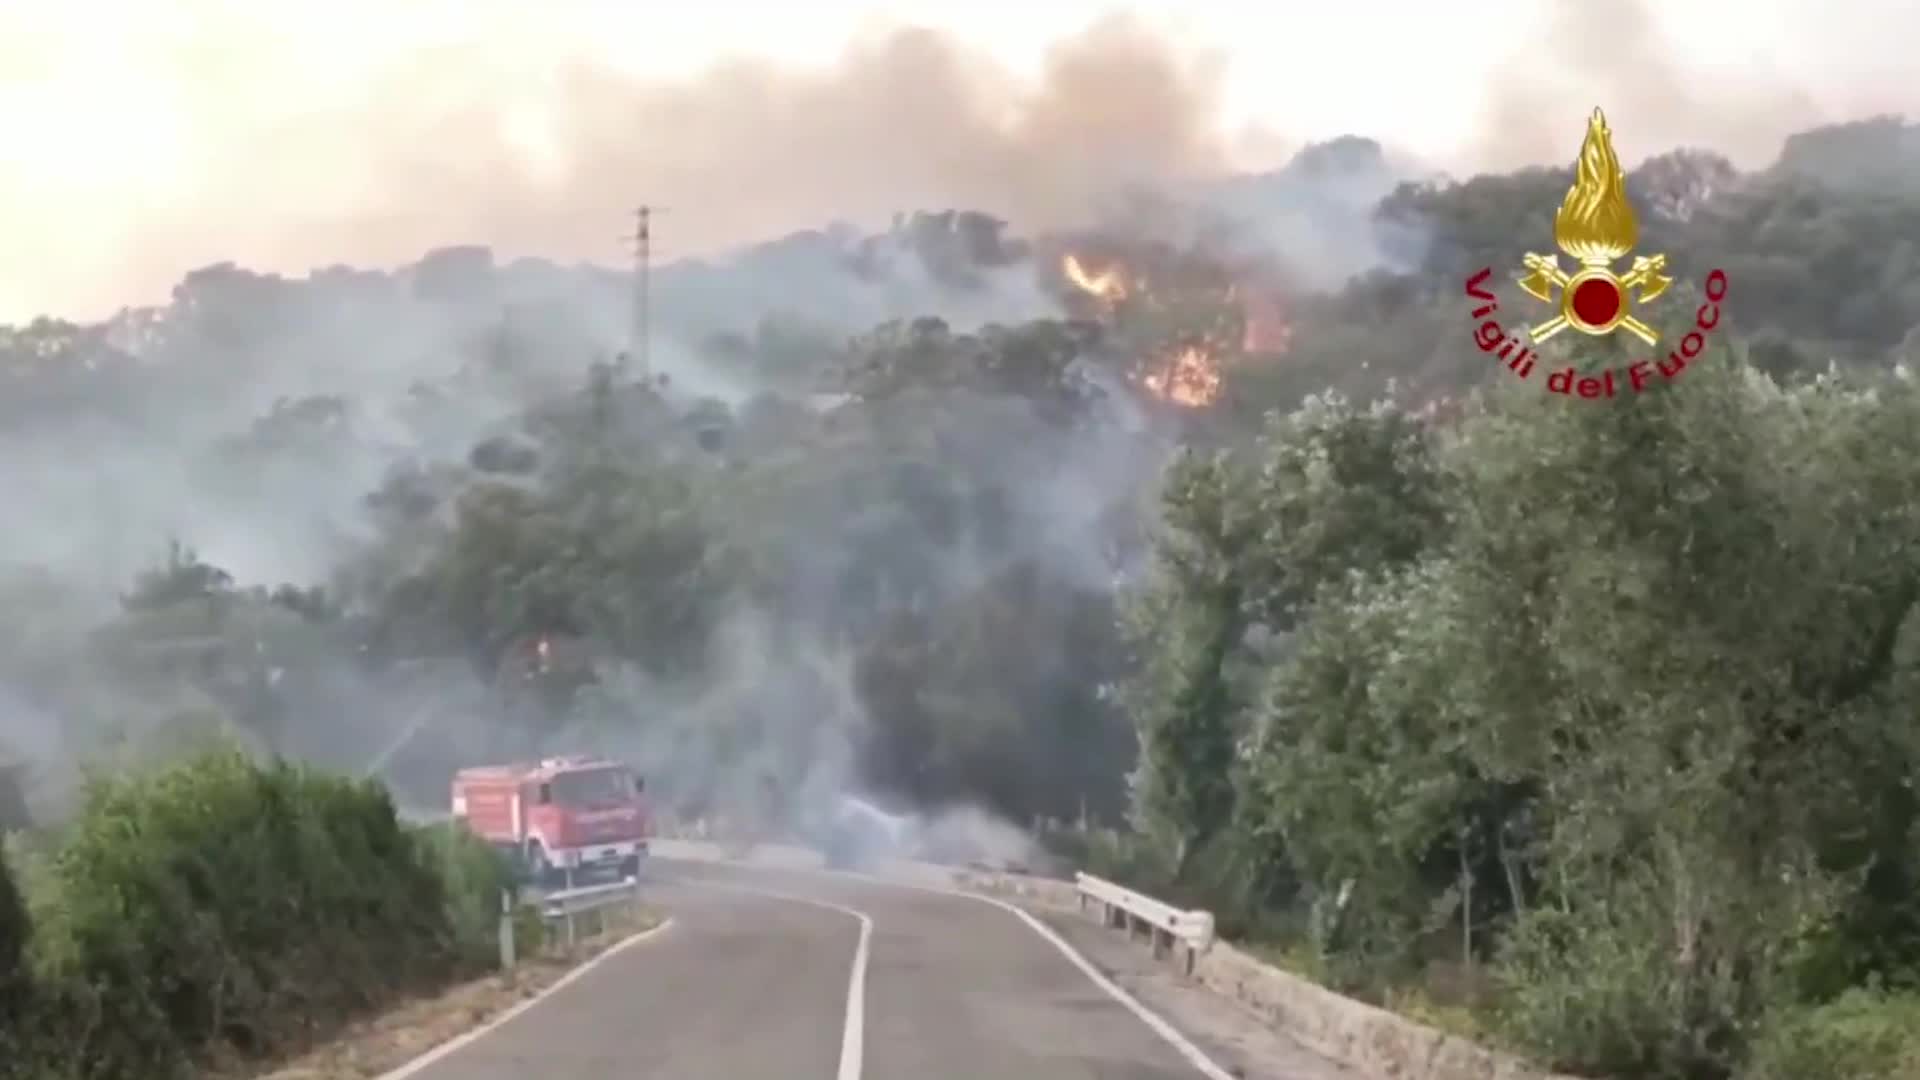 Incendi Sardegna, le pompe funebri Taffo ai piromani: “Vi cremiamo noi”